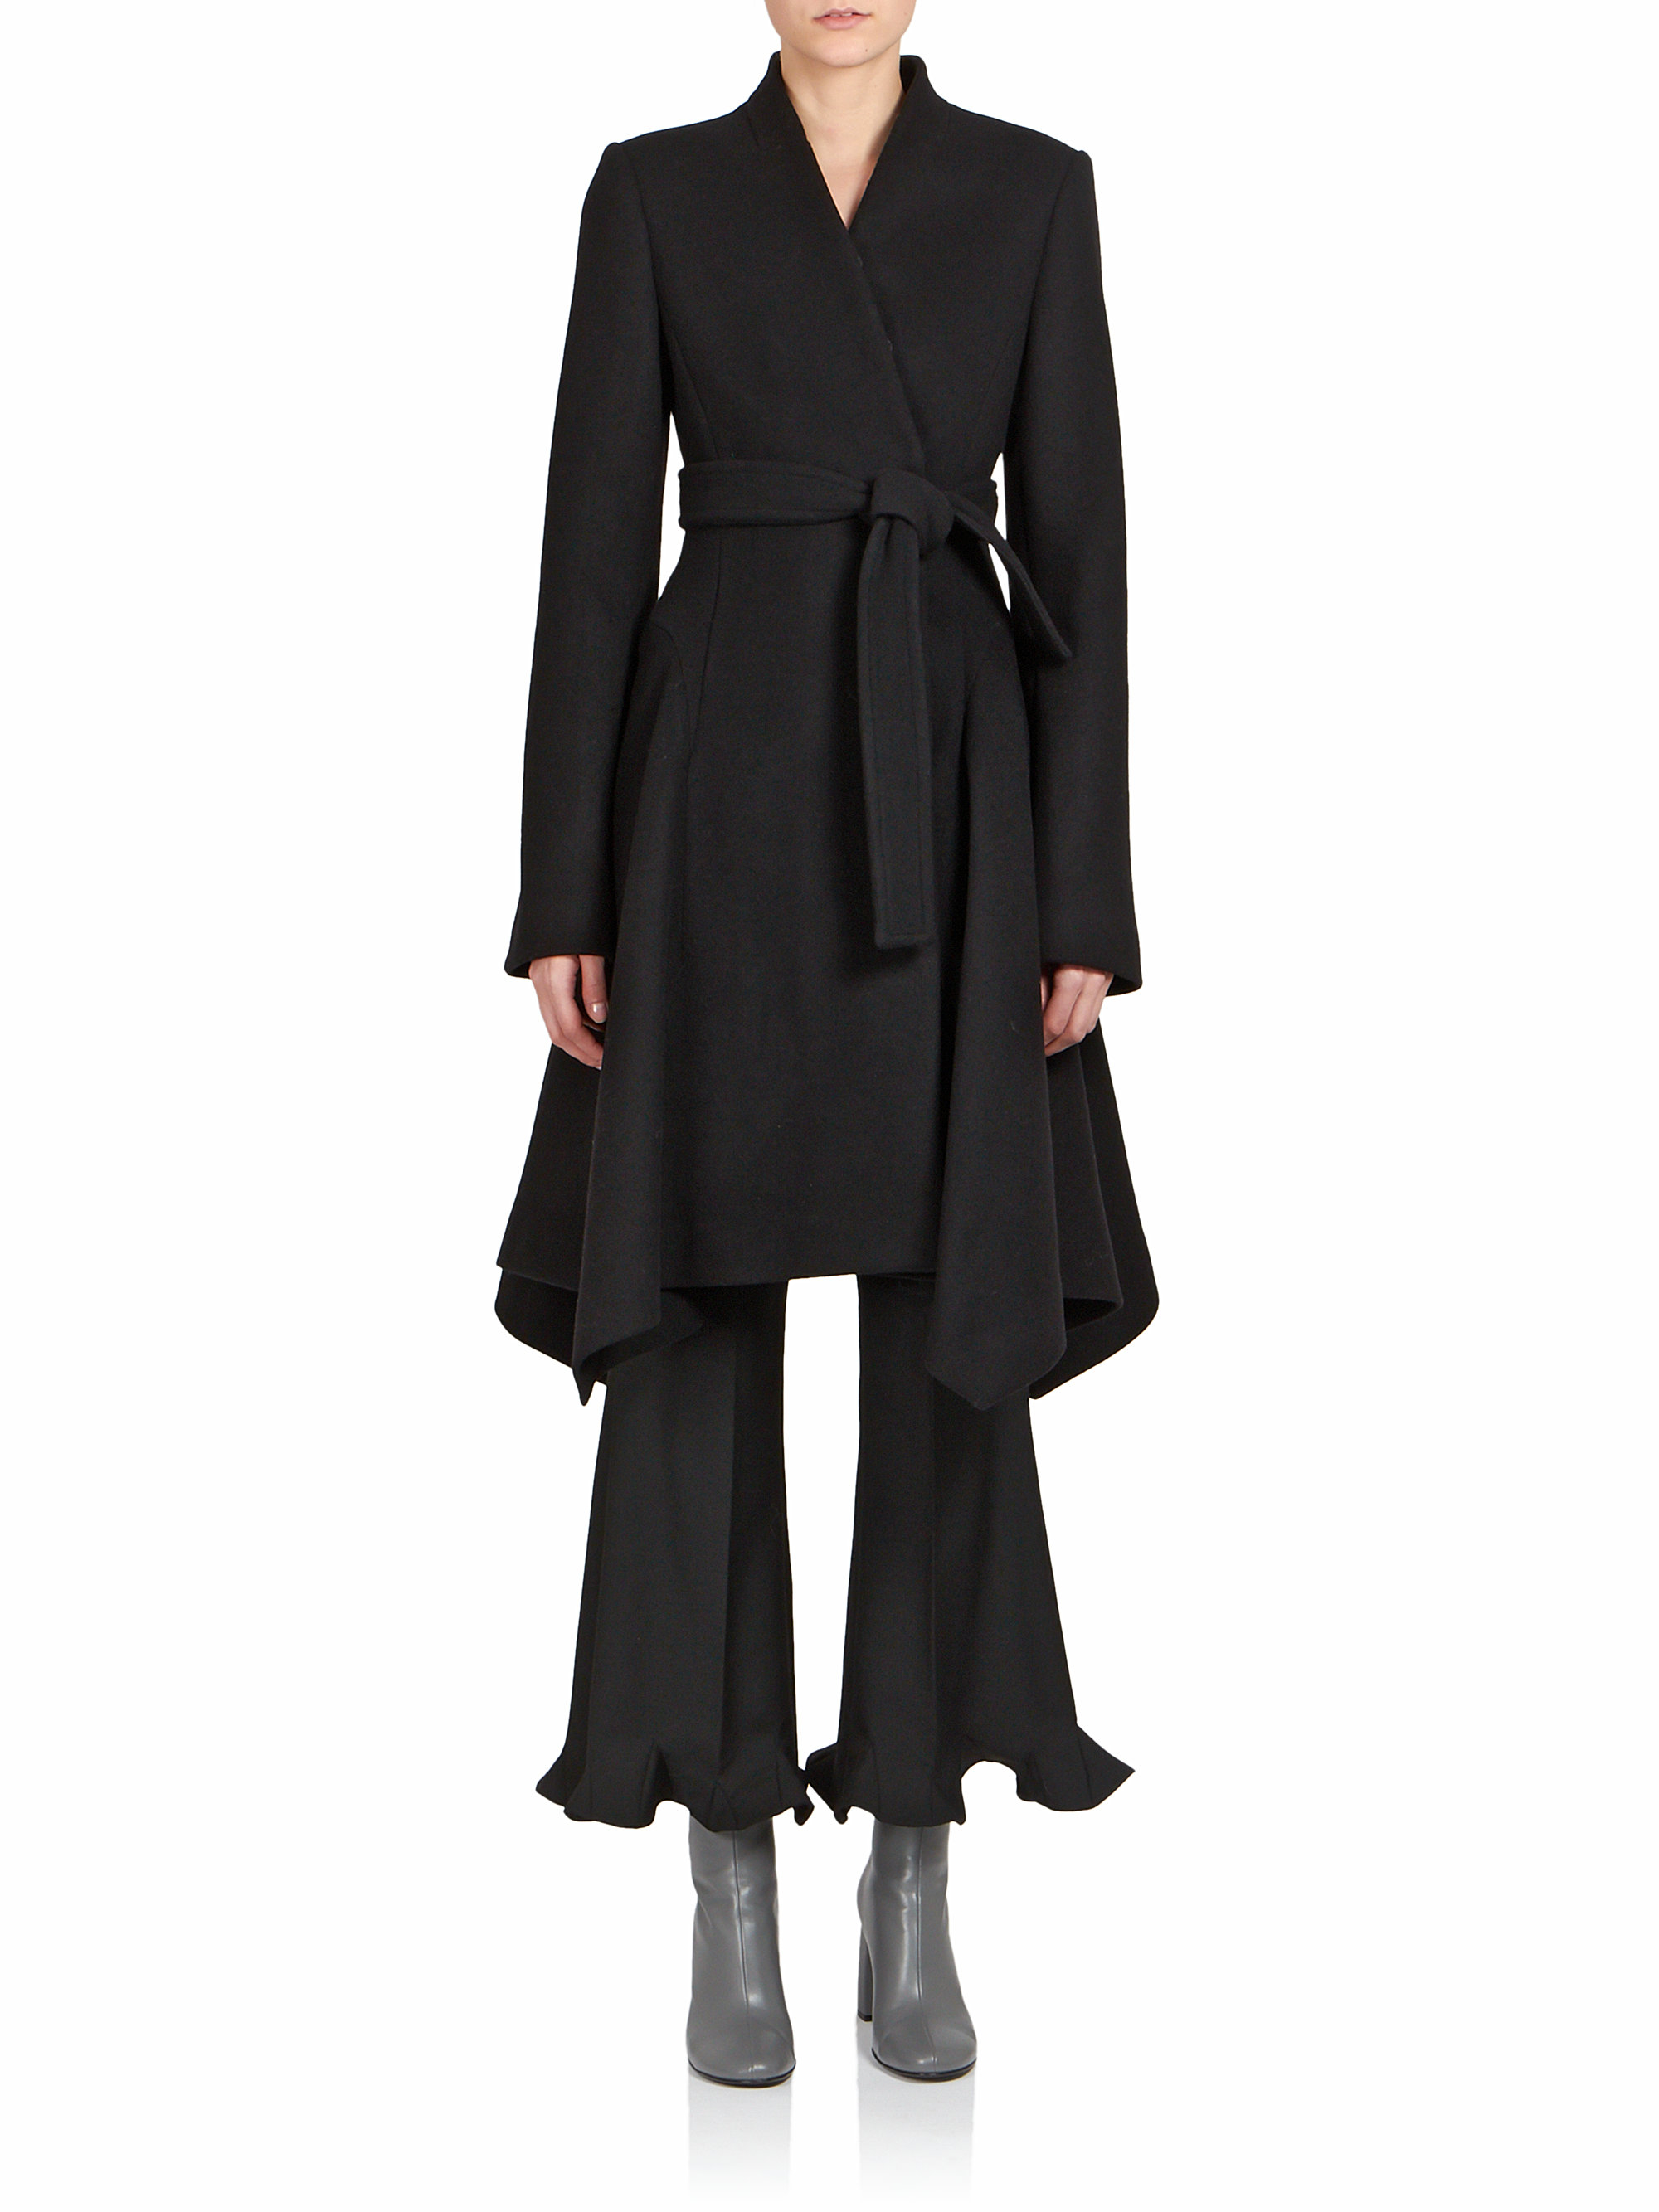 Lyst - Stella mccartney Melton Belted Coat in Black